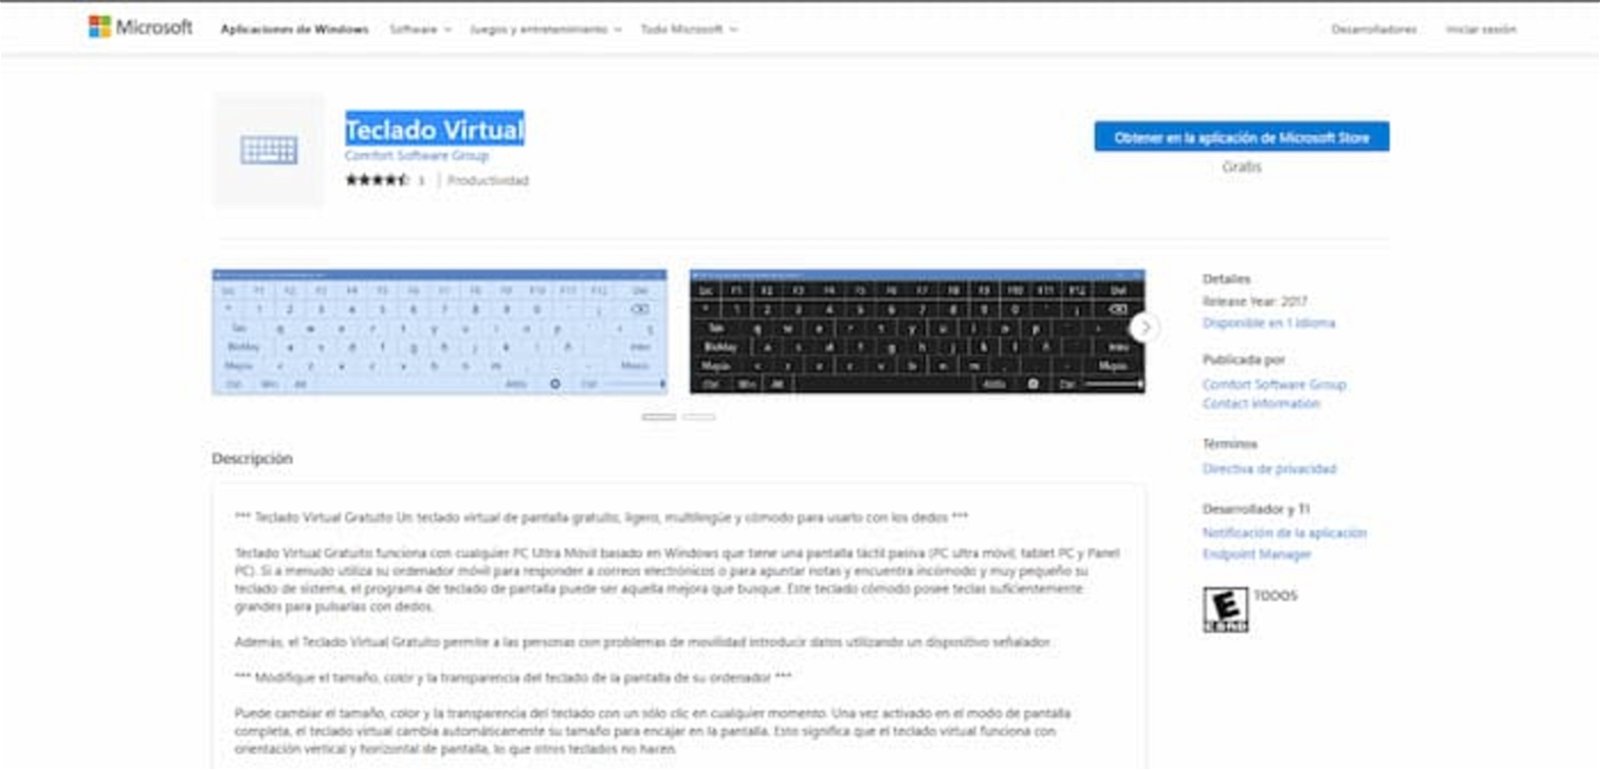 Este teclado virtual se encuentra gratis en la Microsoft Store y es muy personalizable, así como también funcional